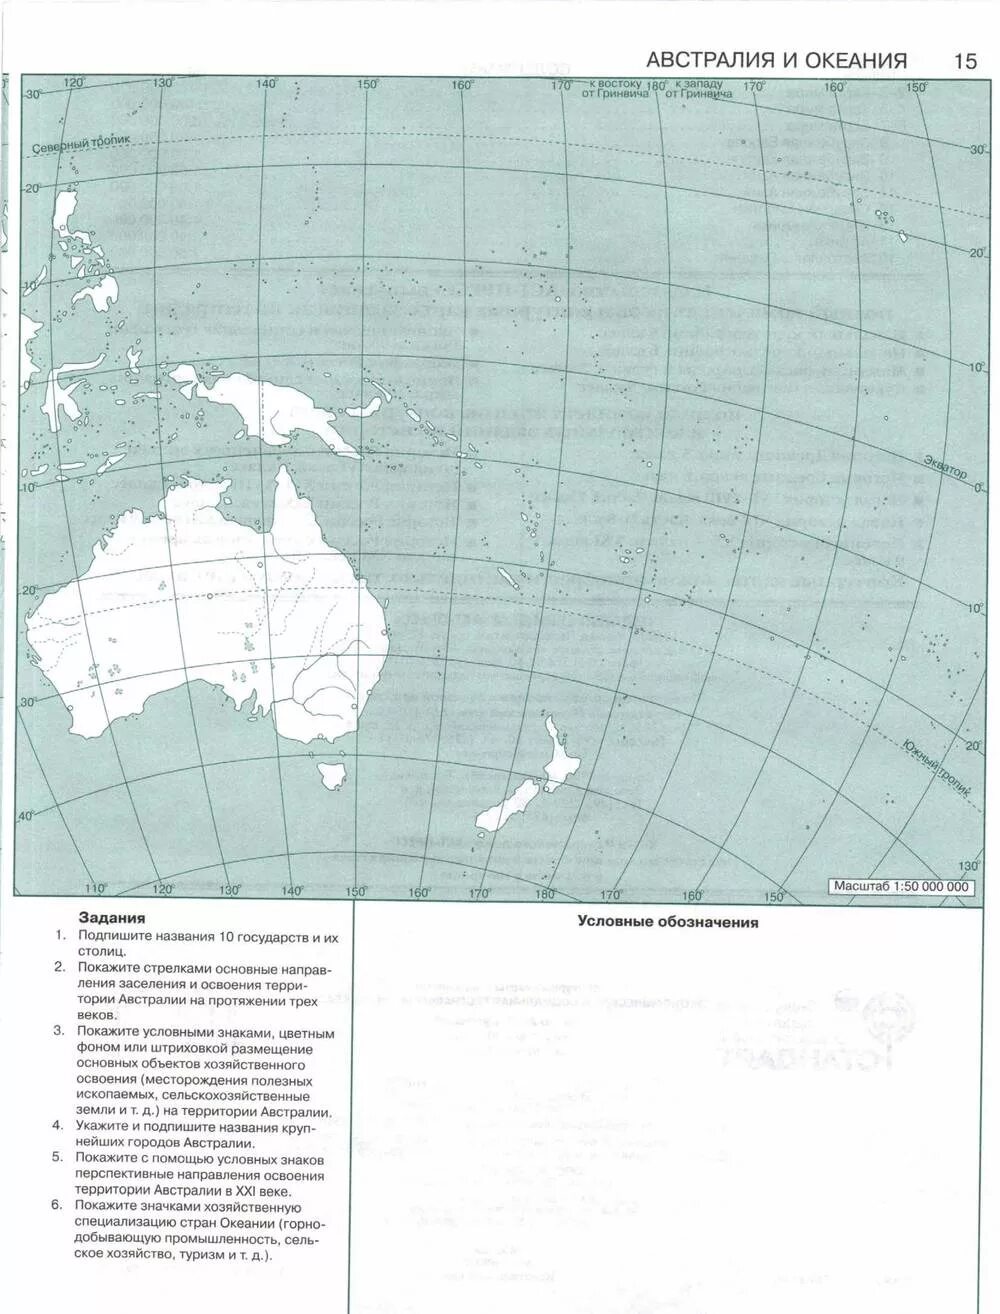 Контурная карта Австралии и Океании. Австралия и Океания политическая карта 7 класс контурная карта. Карта Австралии и Океании 7 класс контурная карта. Австралия и Океания контурная карта 7 класс.